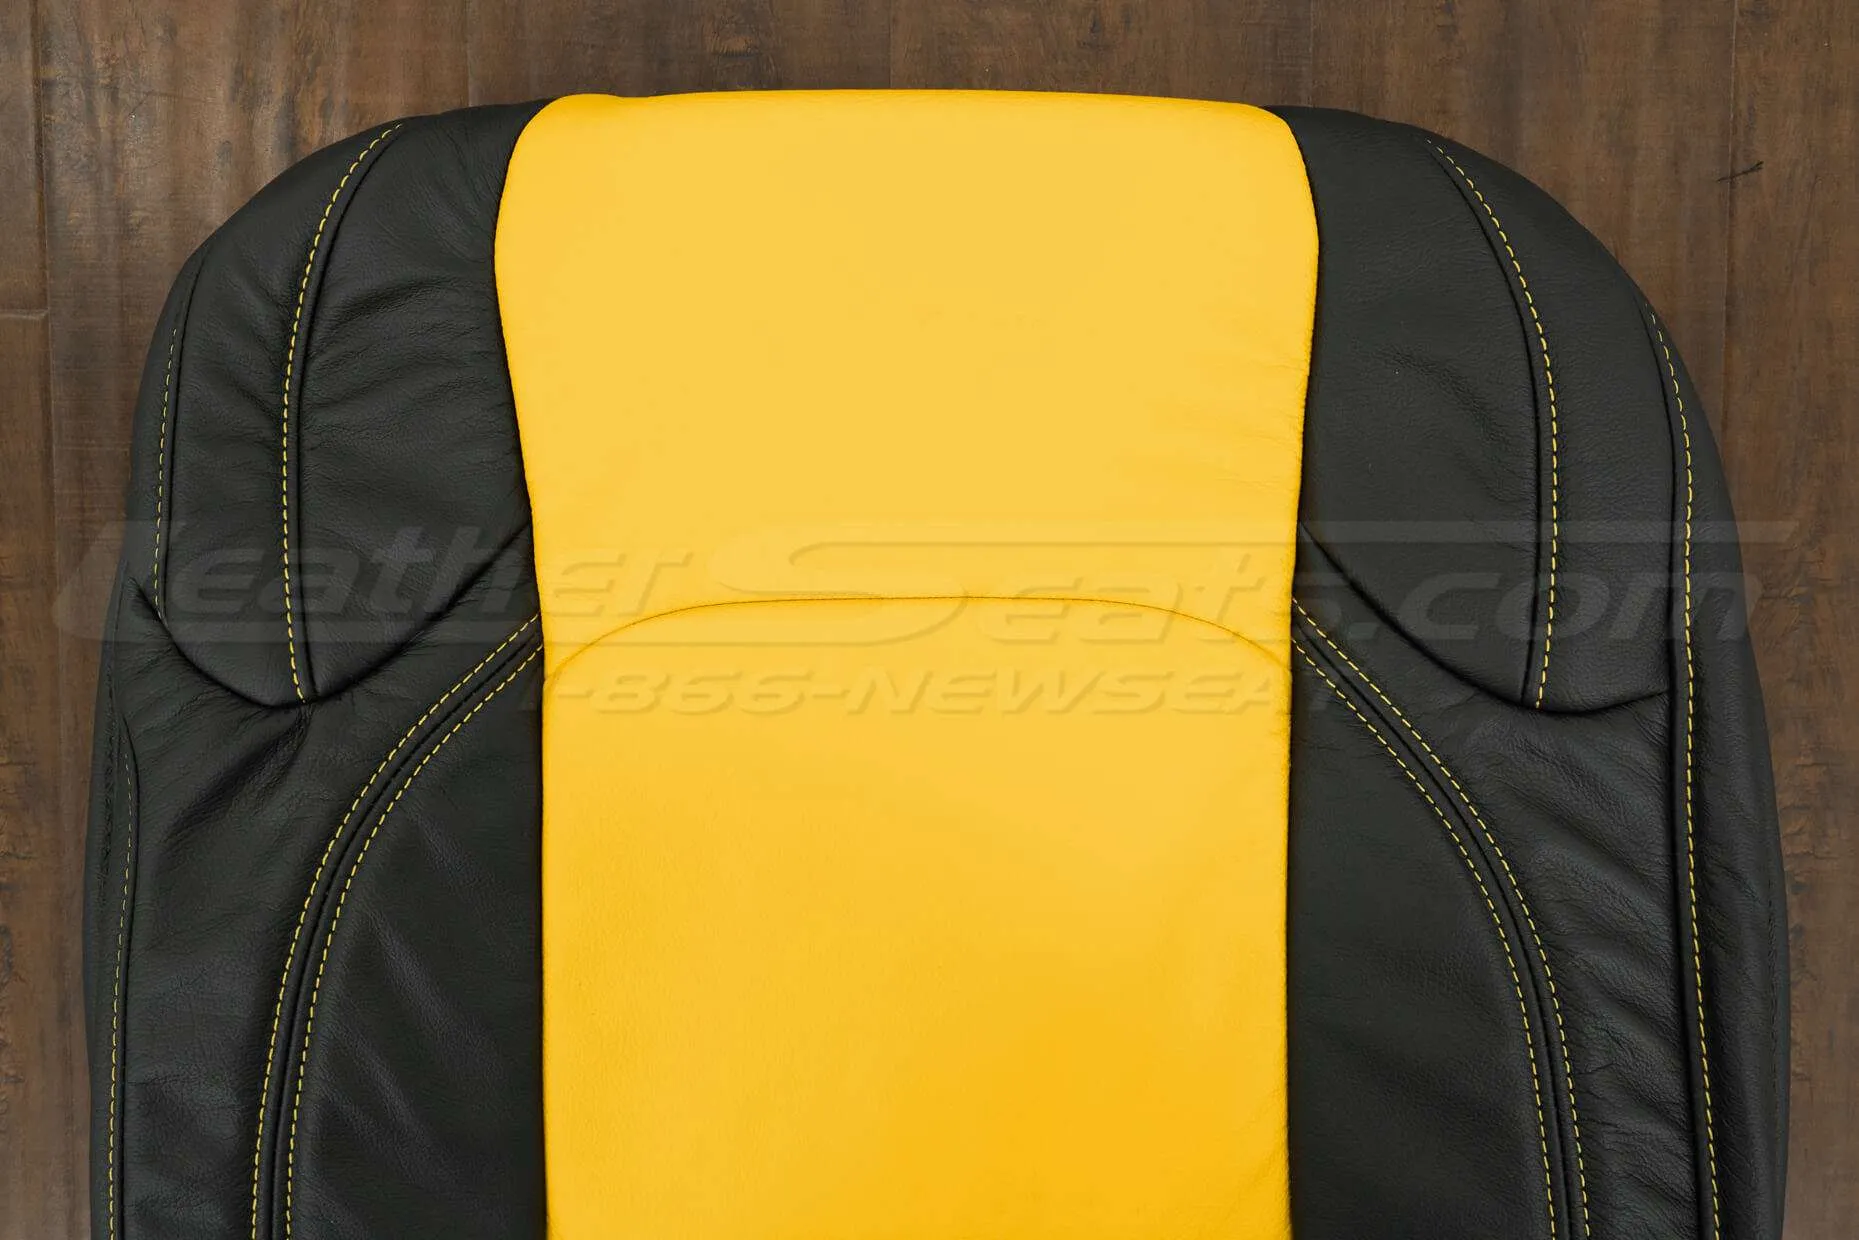 2018-2021 Jeep Wrangler Upholstery kit - Black & Velocity Yellow - Upper section of backrest